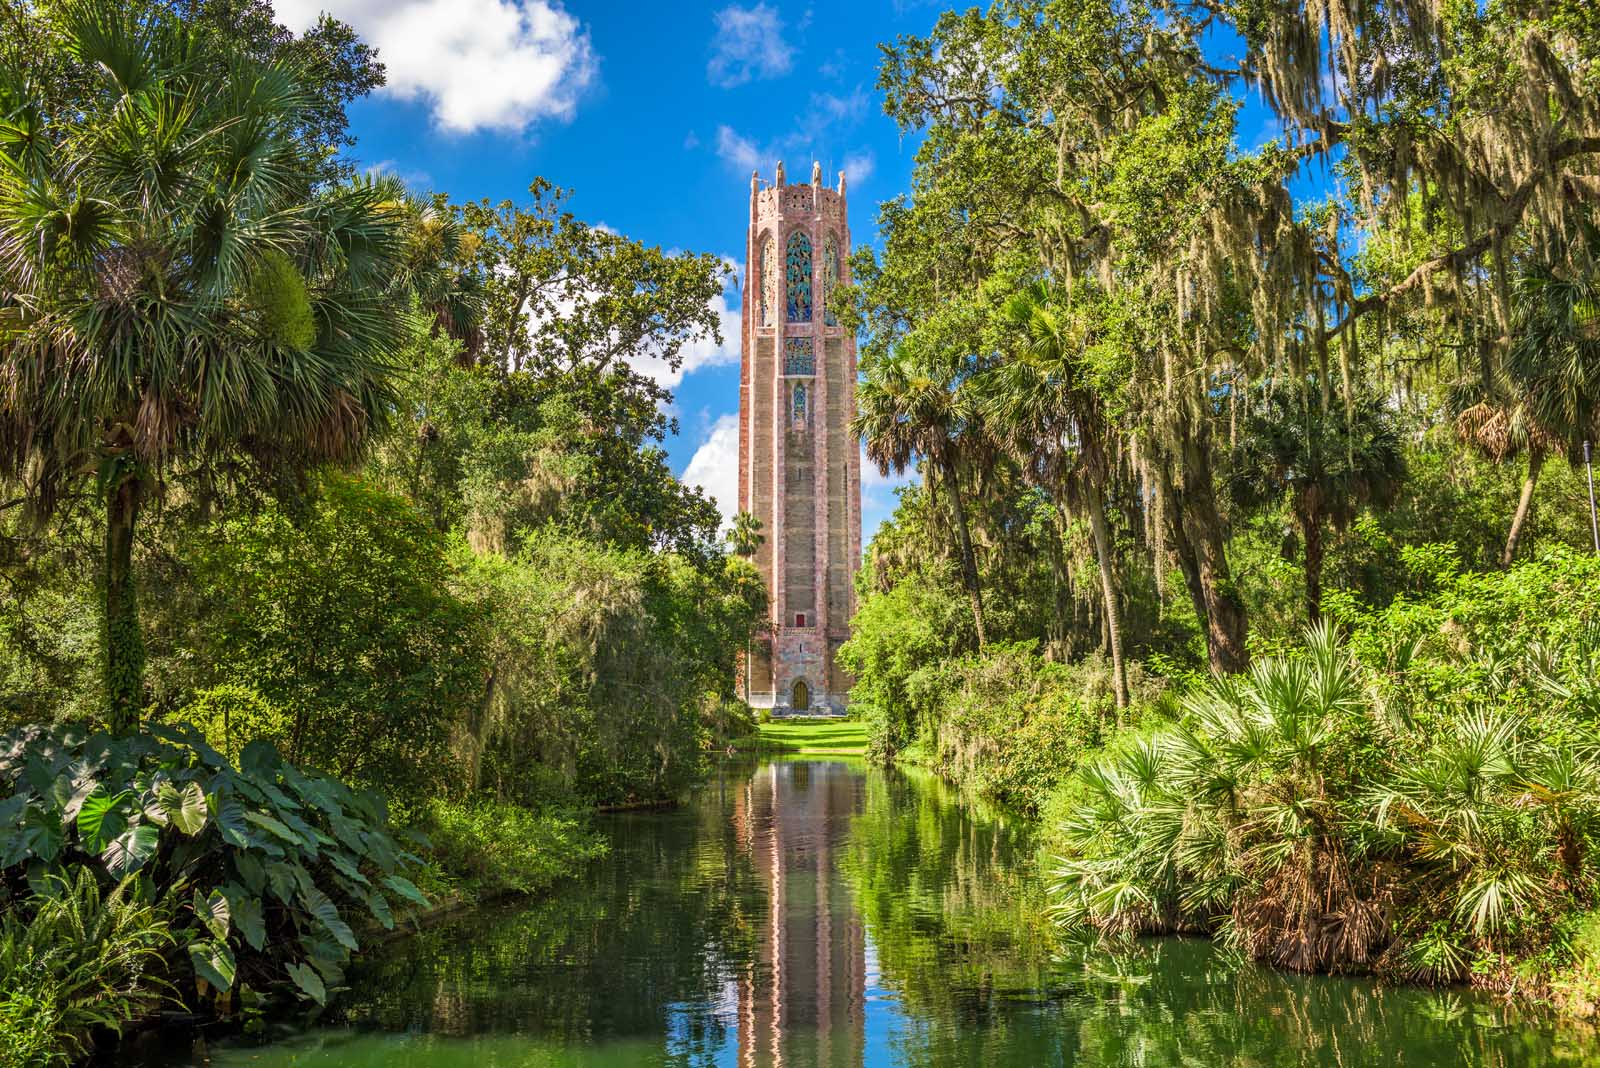 Bok Tower Gardens near Orlando Florida